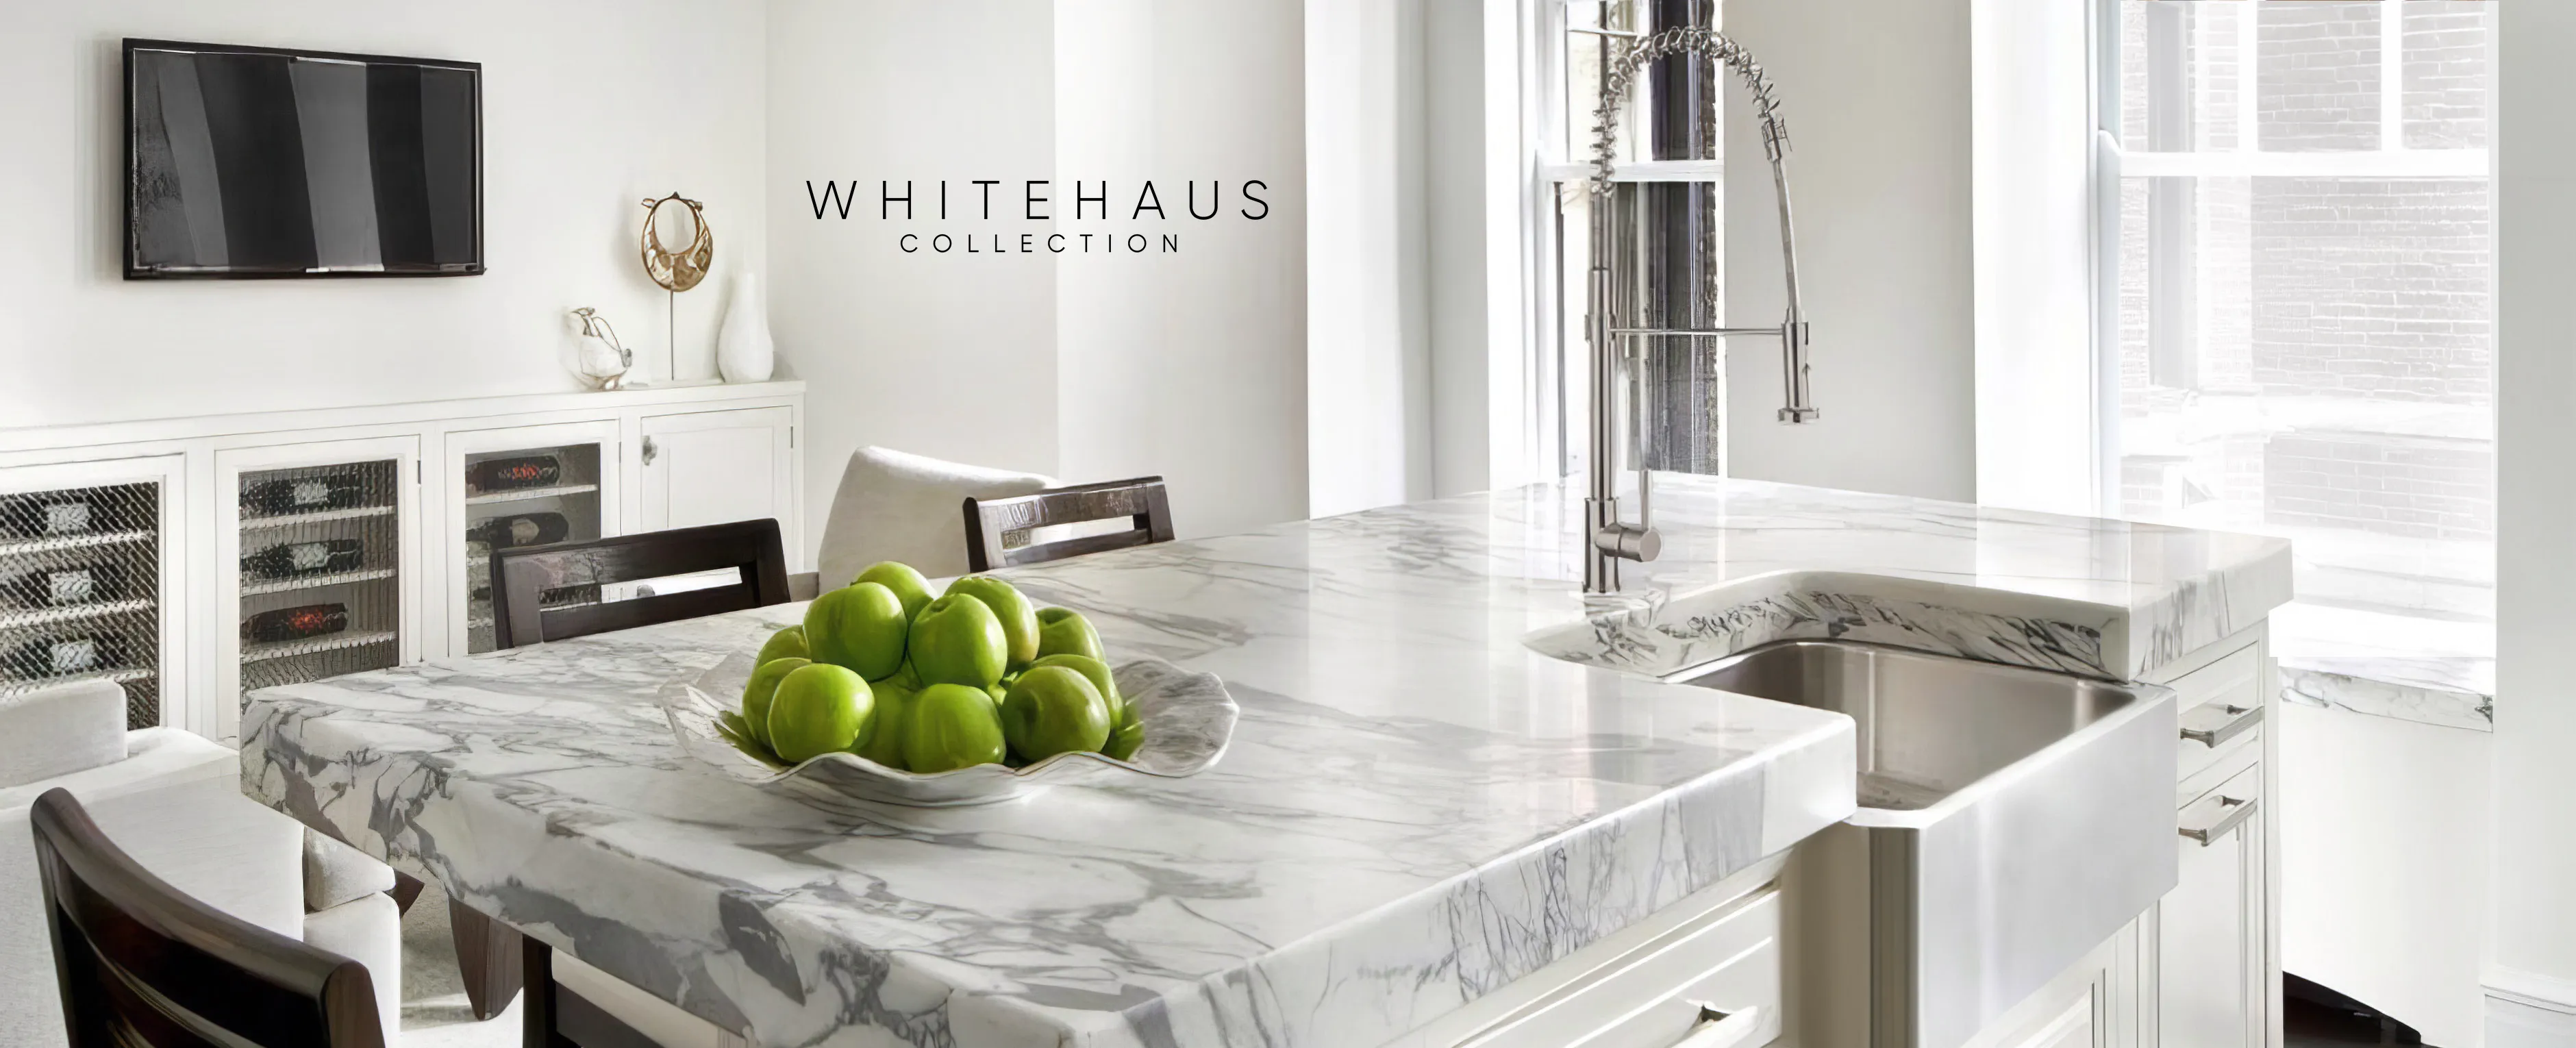 Whitehaus Collection Bathroom & Kitchen